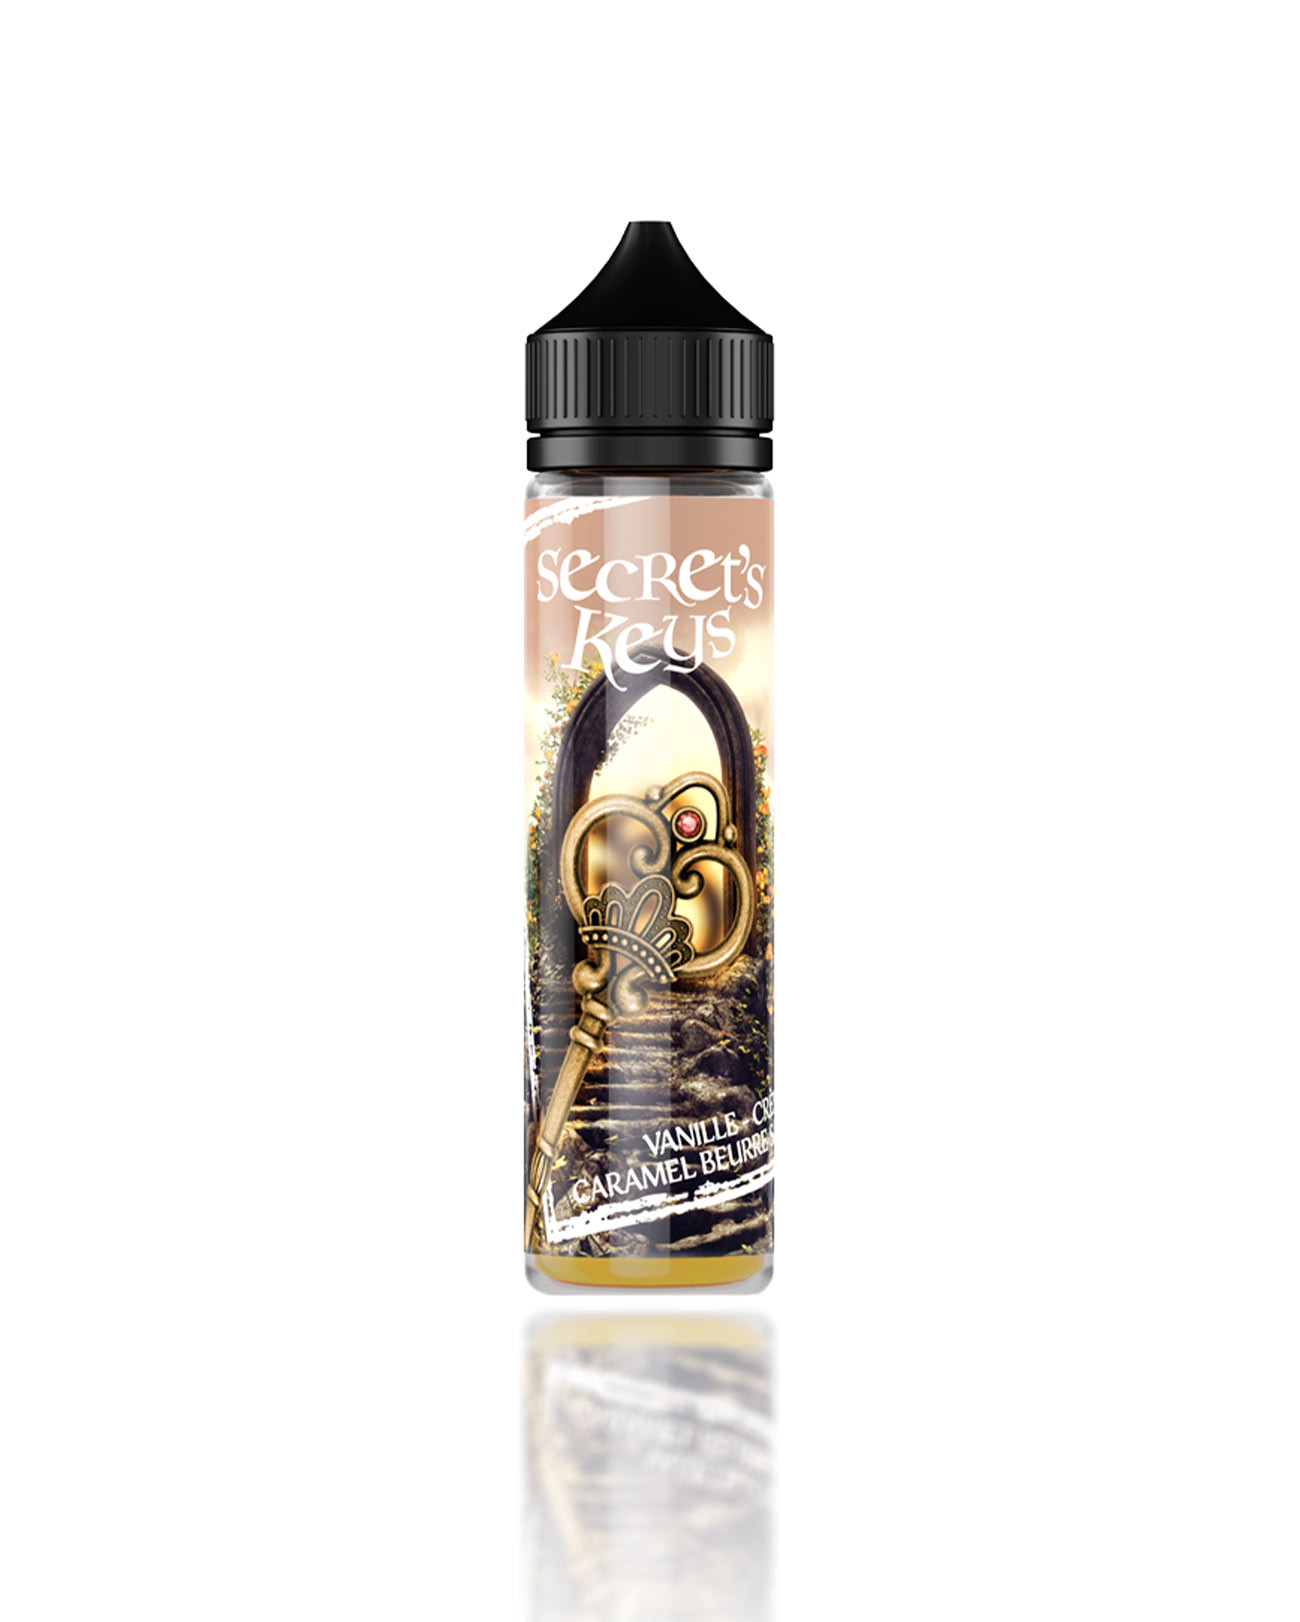 E-liquide 50 ml pour cigarette électronique Secret' Keys Golden parfum crème vanille et caramel beurre salé